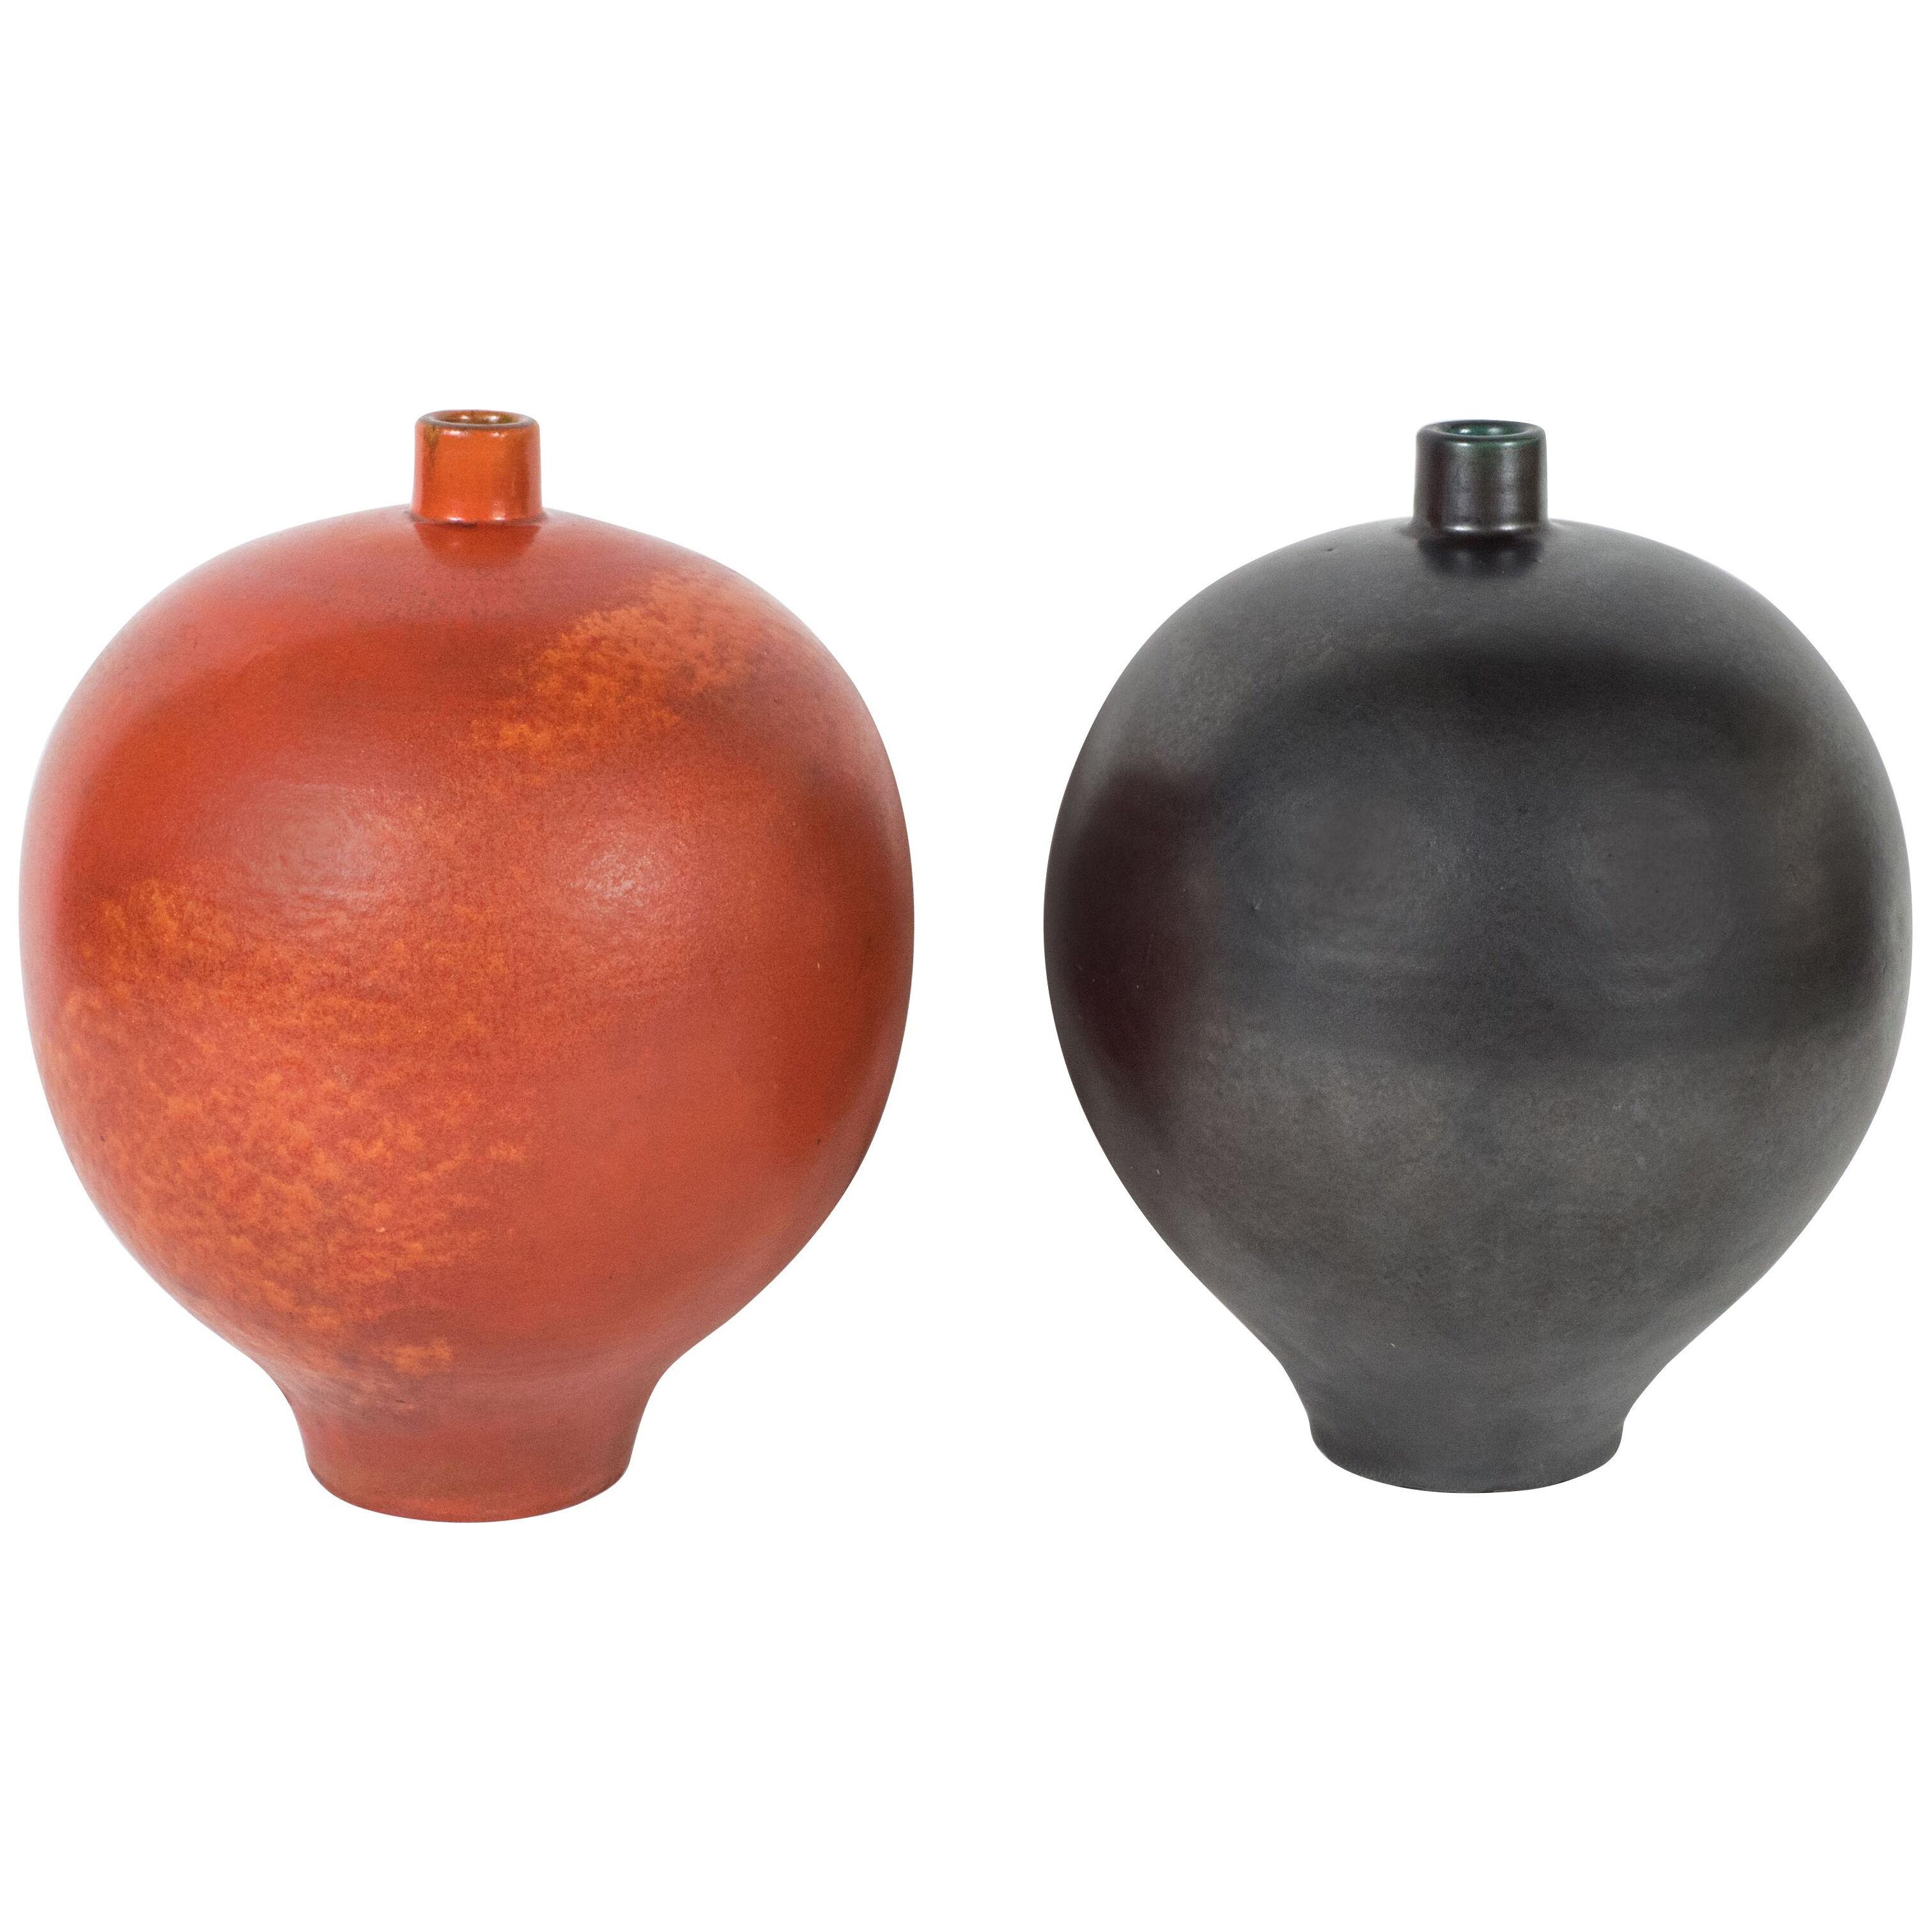 Pair of Graphite and Orange Primavera Vases